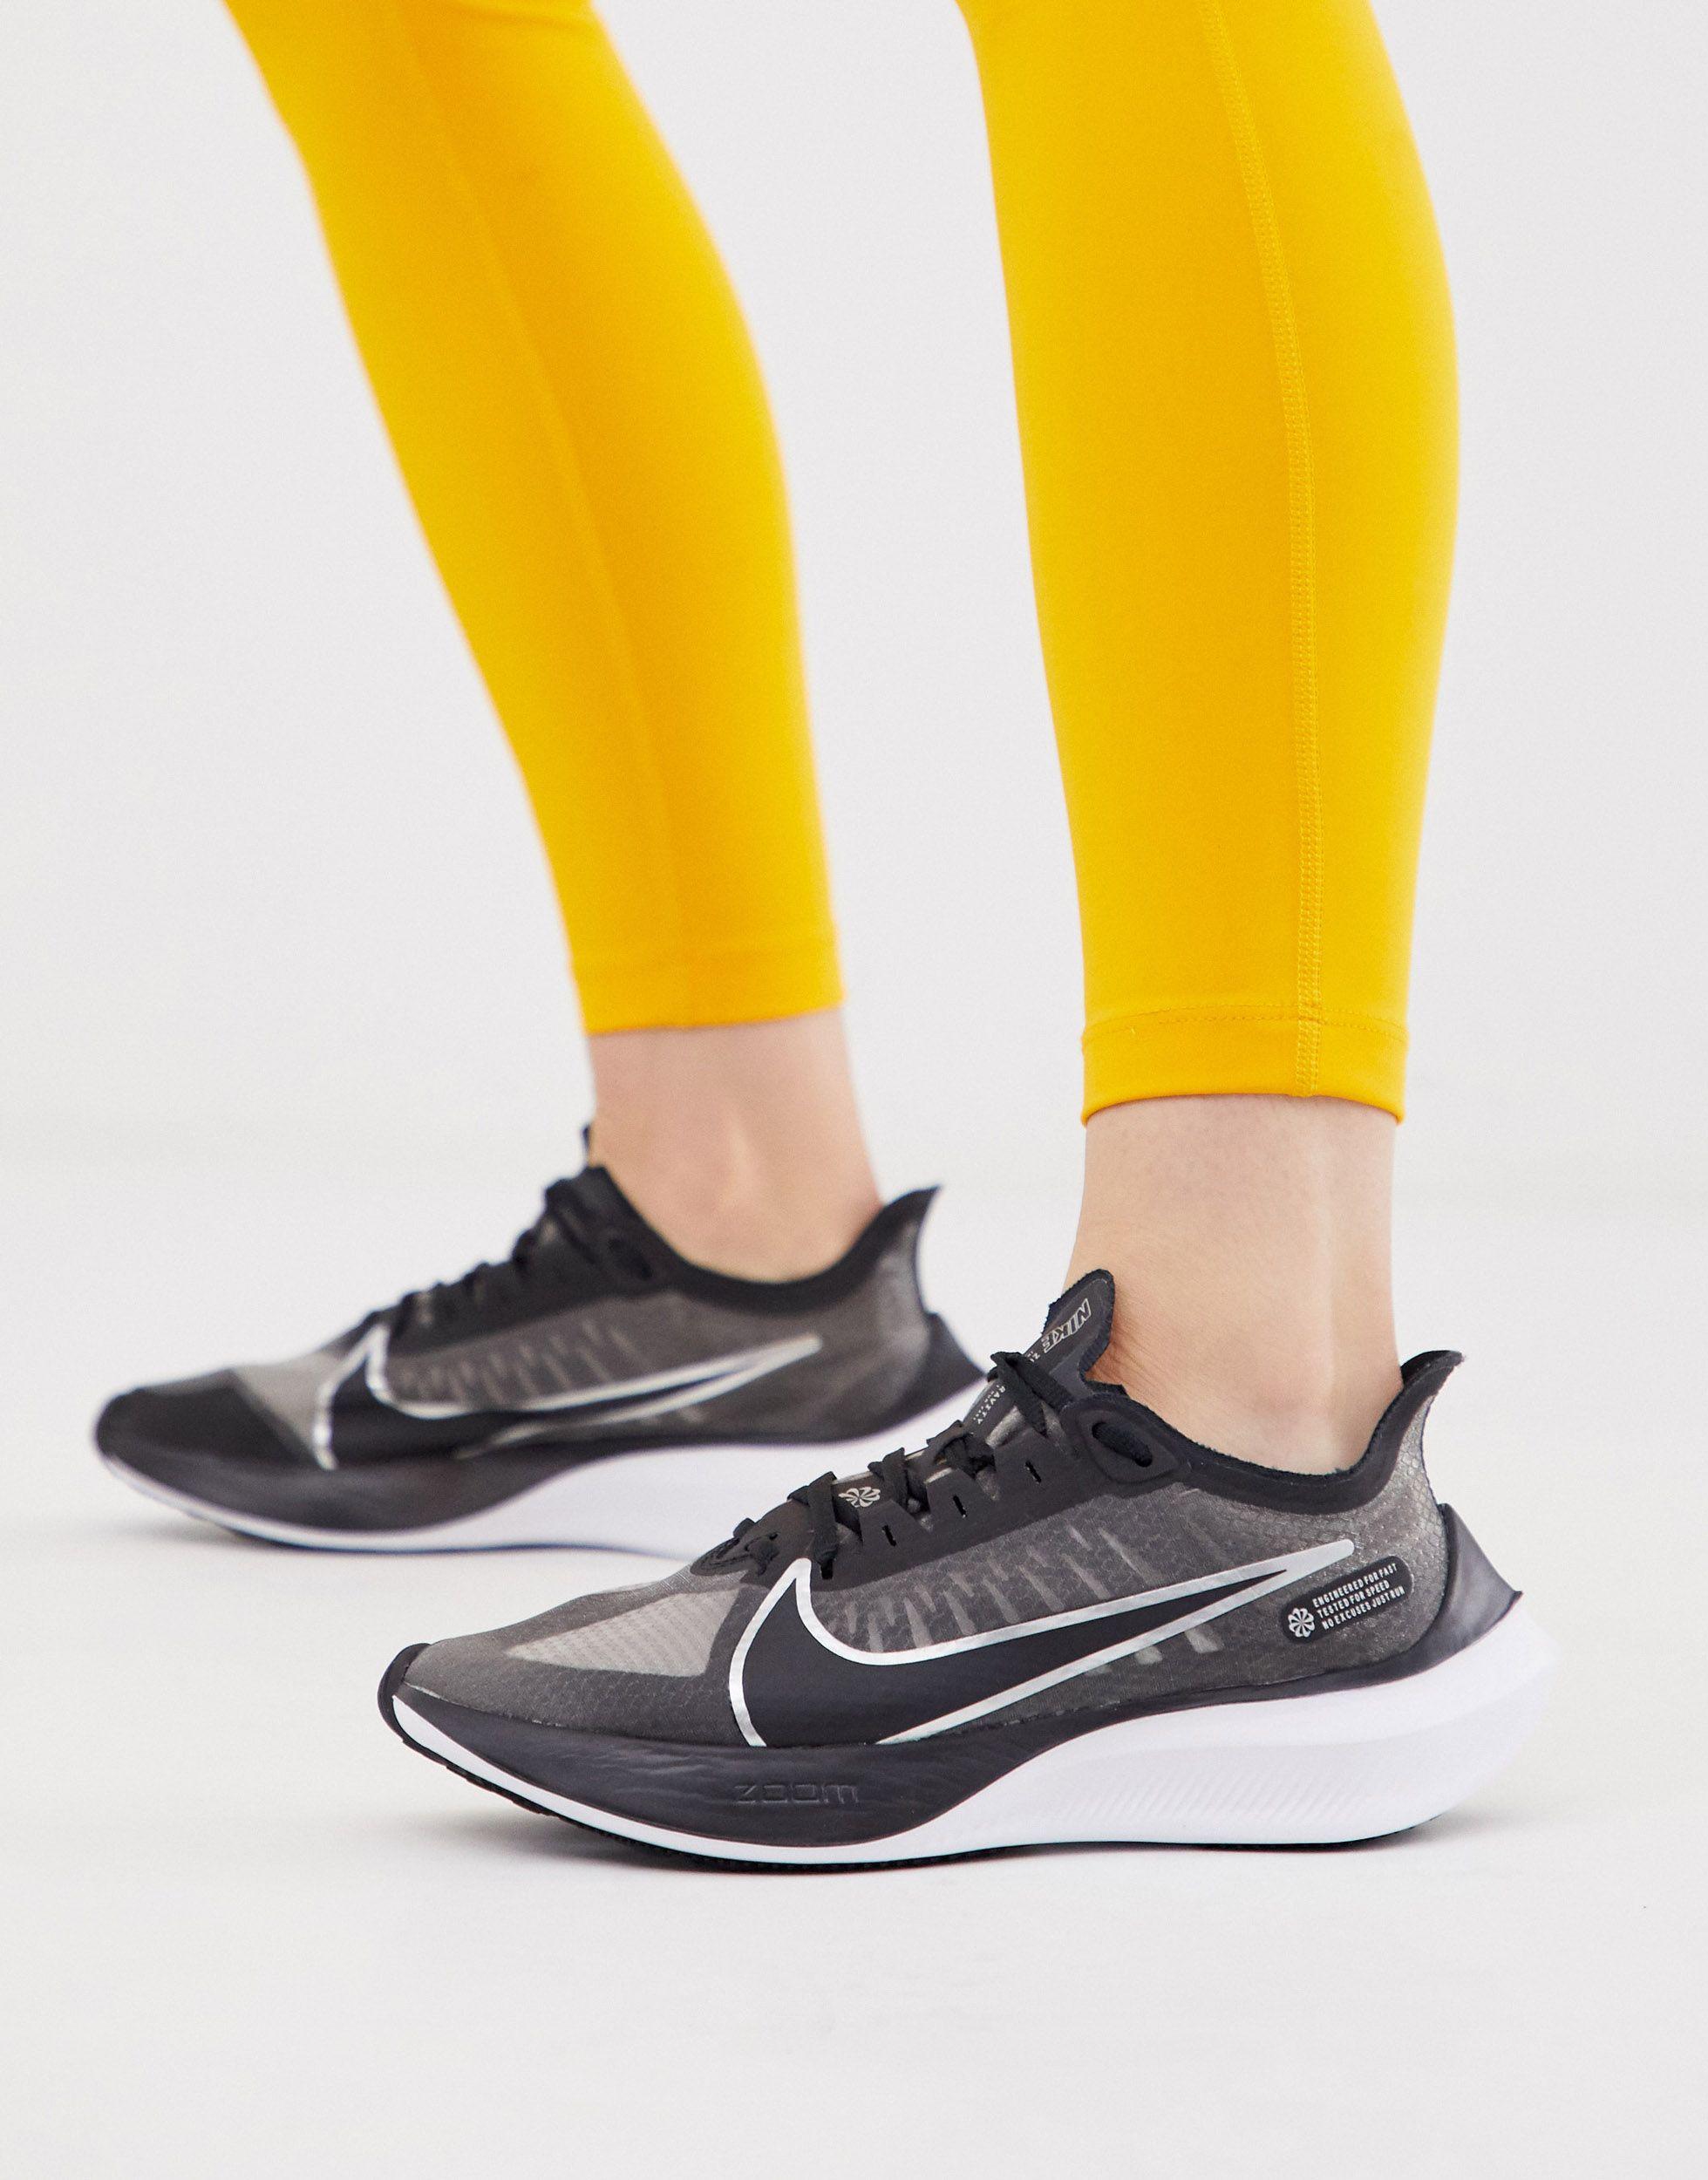 Nike Zoom Gravity Ripstop Sneakers in Black - Lyst